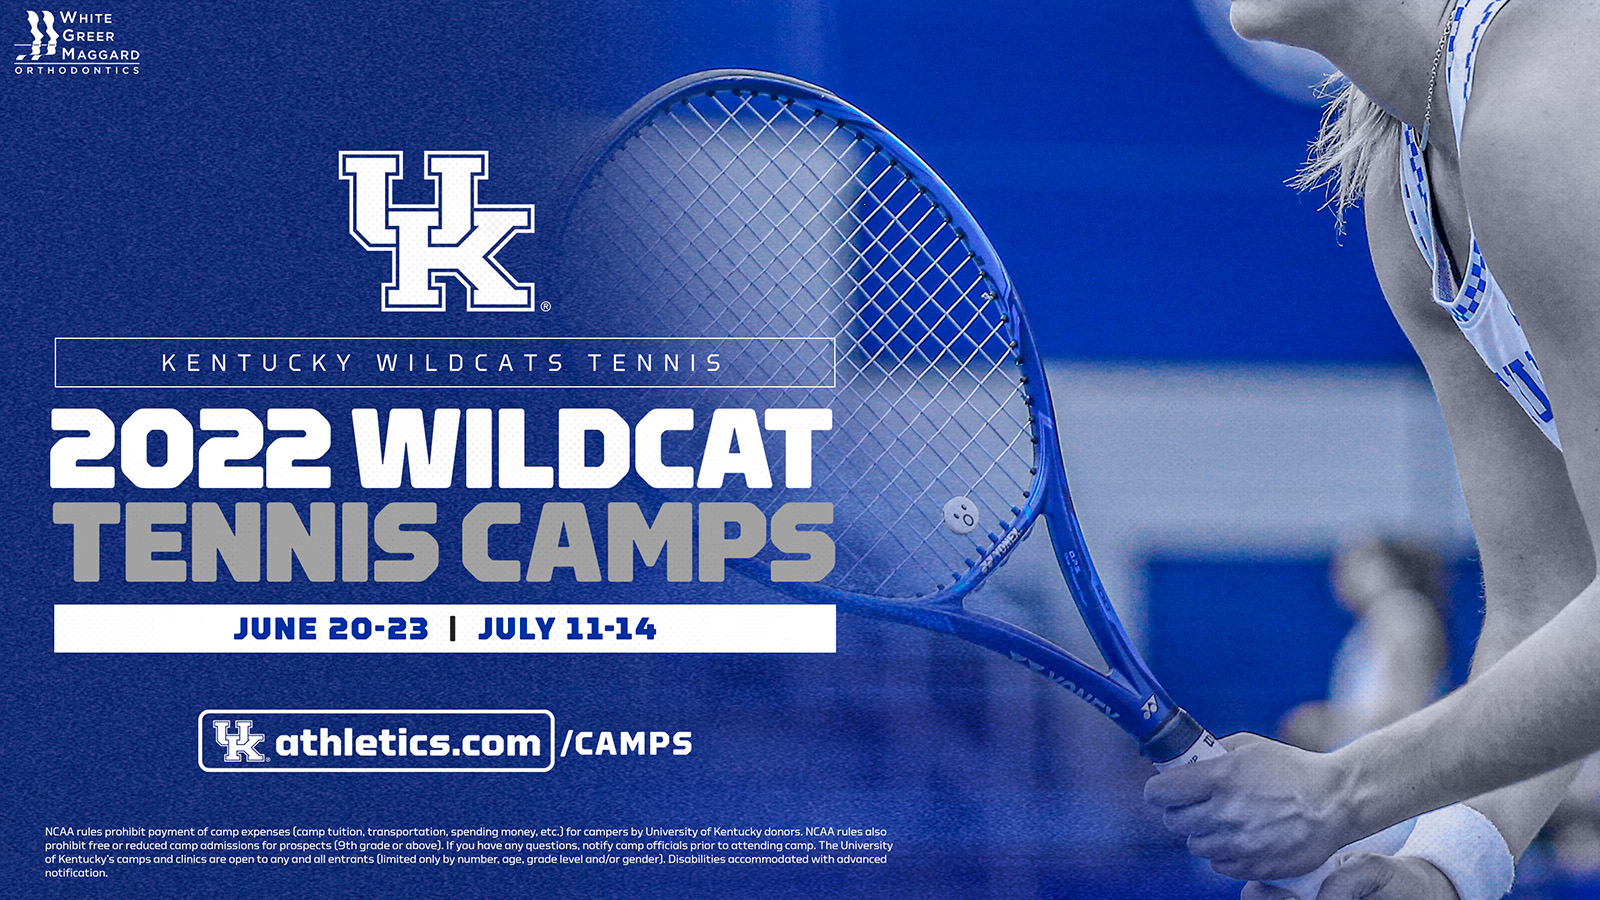 Wildcat Tennis Camps